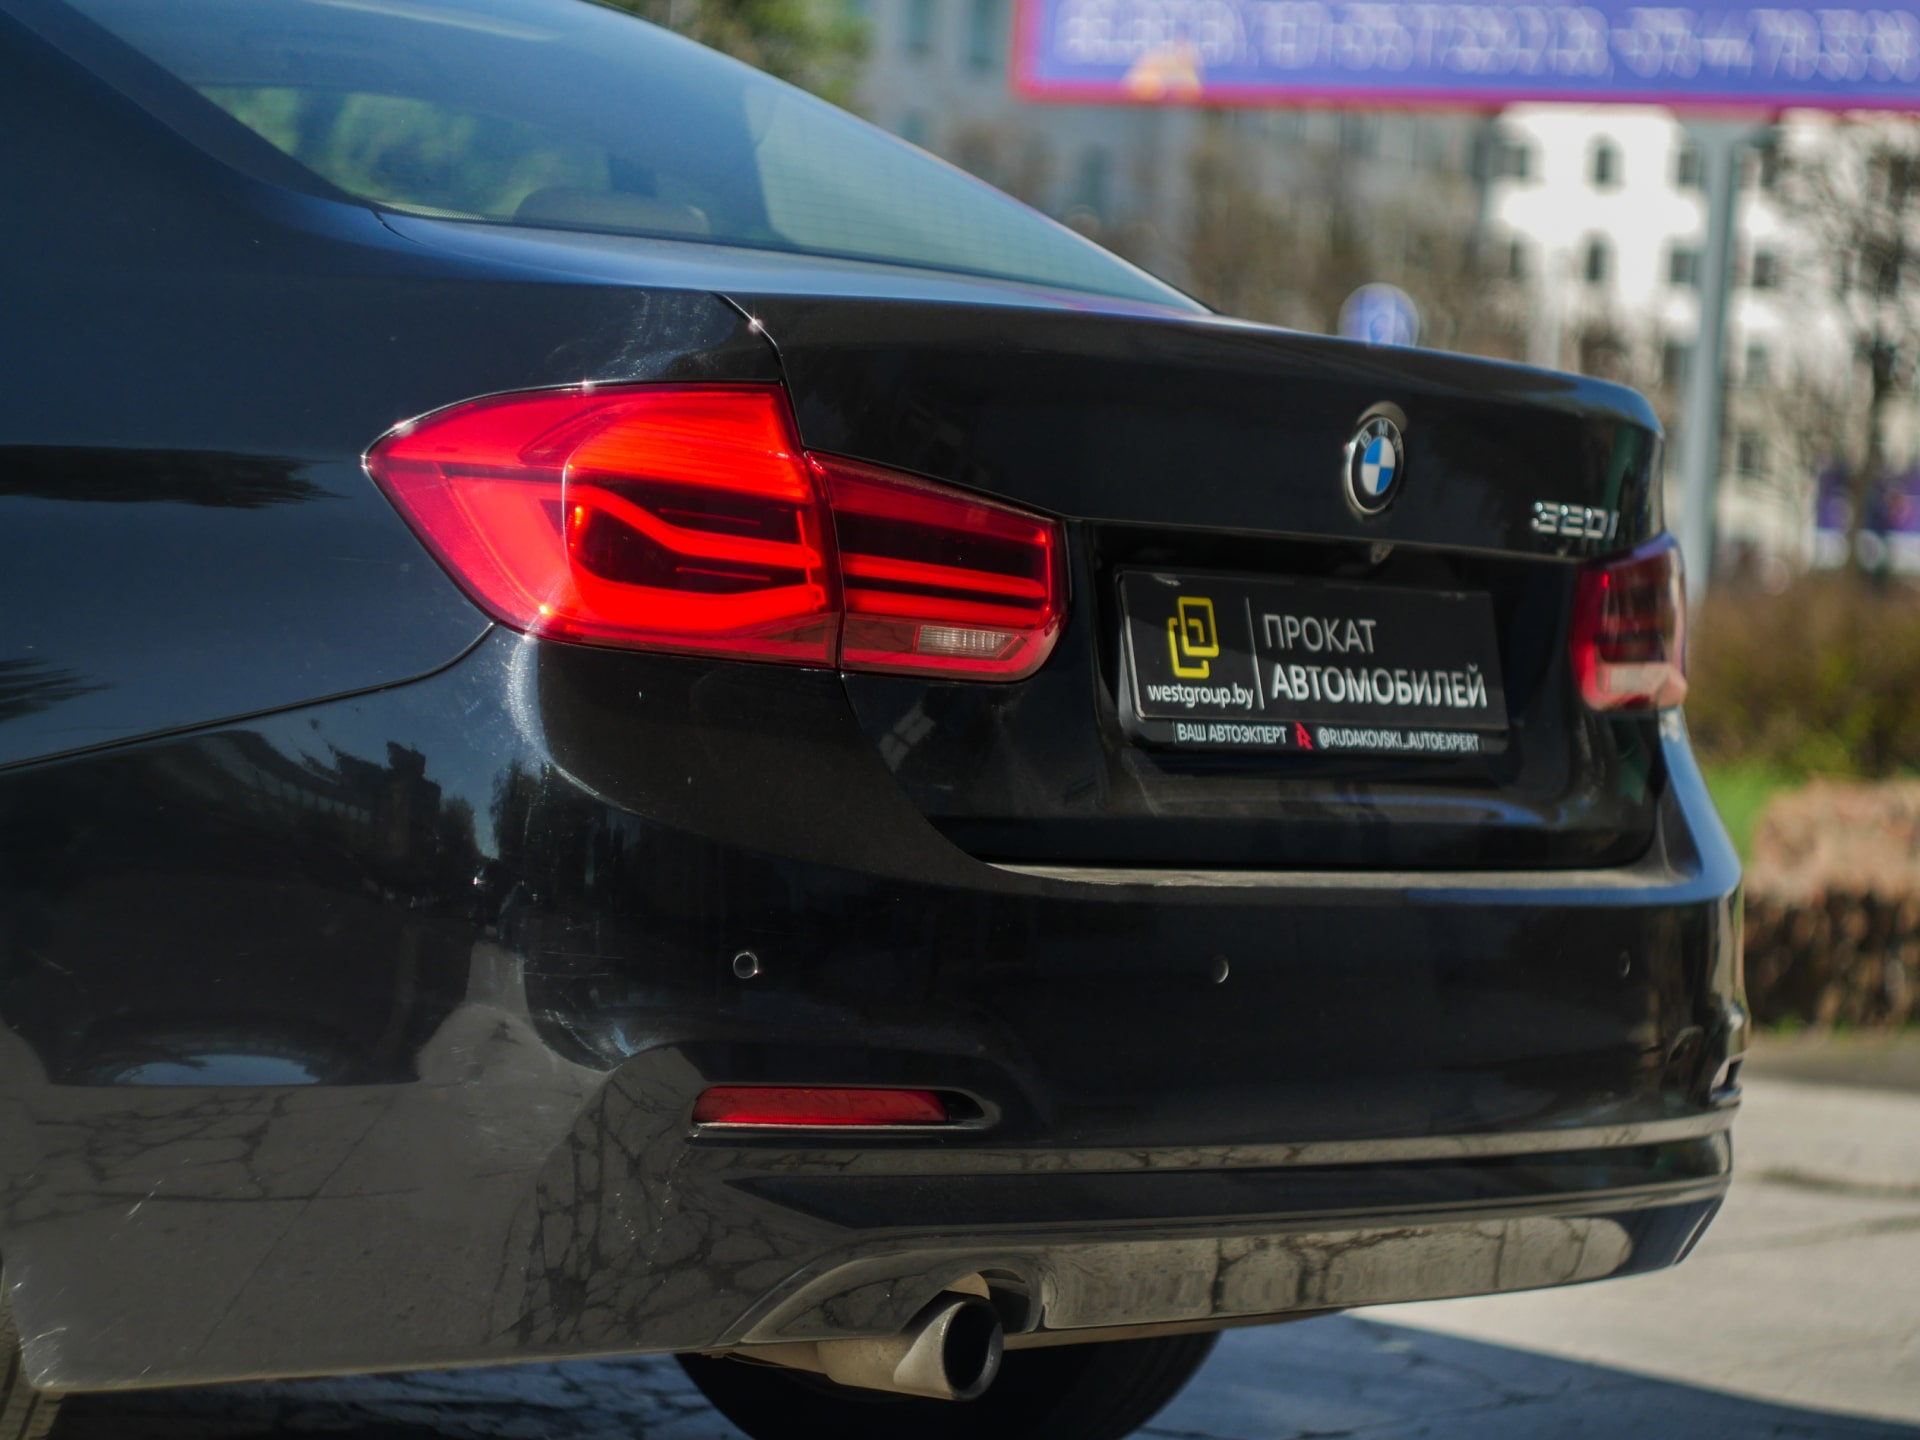 Аренда  BMW 320i F30  2 класса 2018 года в городе Минск от 65 $/сутки,  двигатель: Бензин , объем 2.0i литров, КАСКО (Мультидрайв), без водителя, вид 3 - West Group